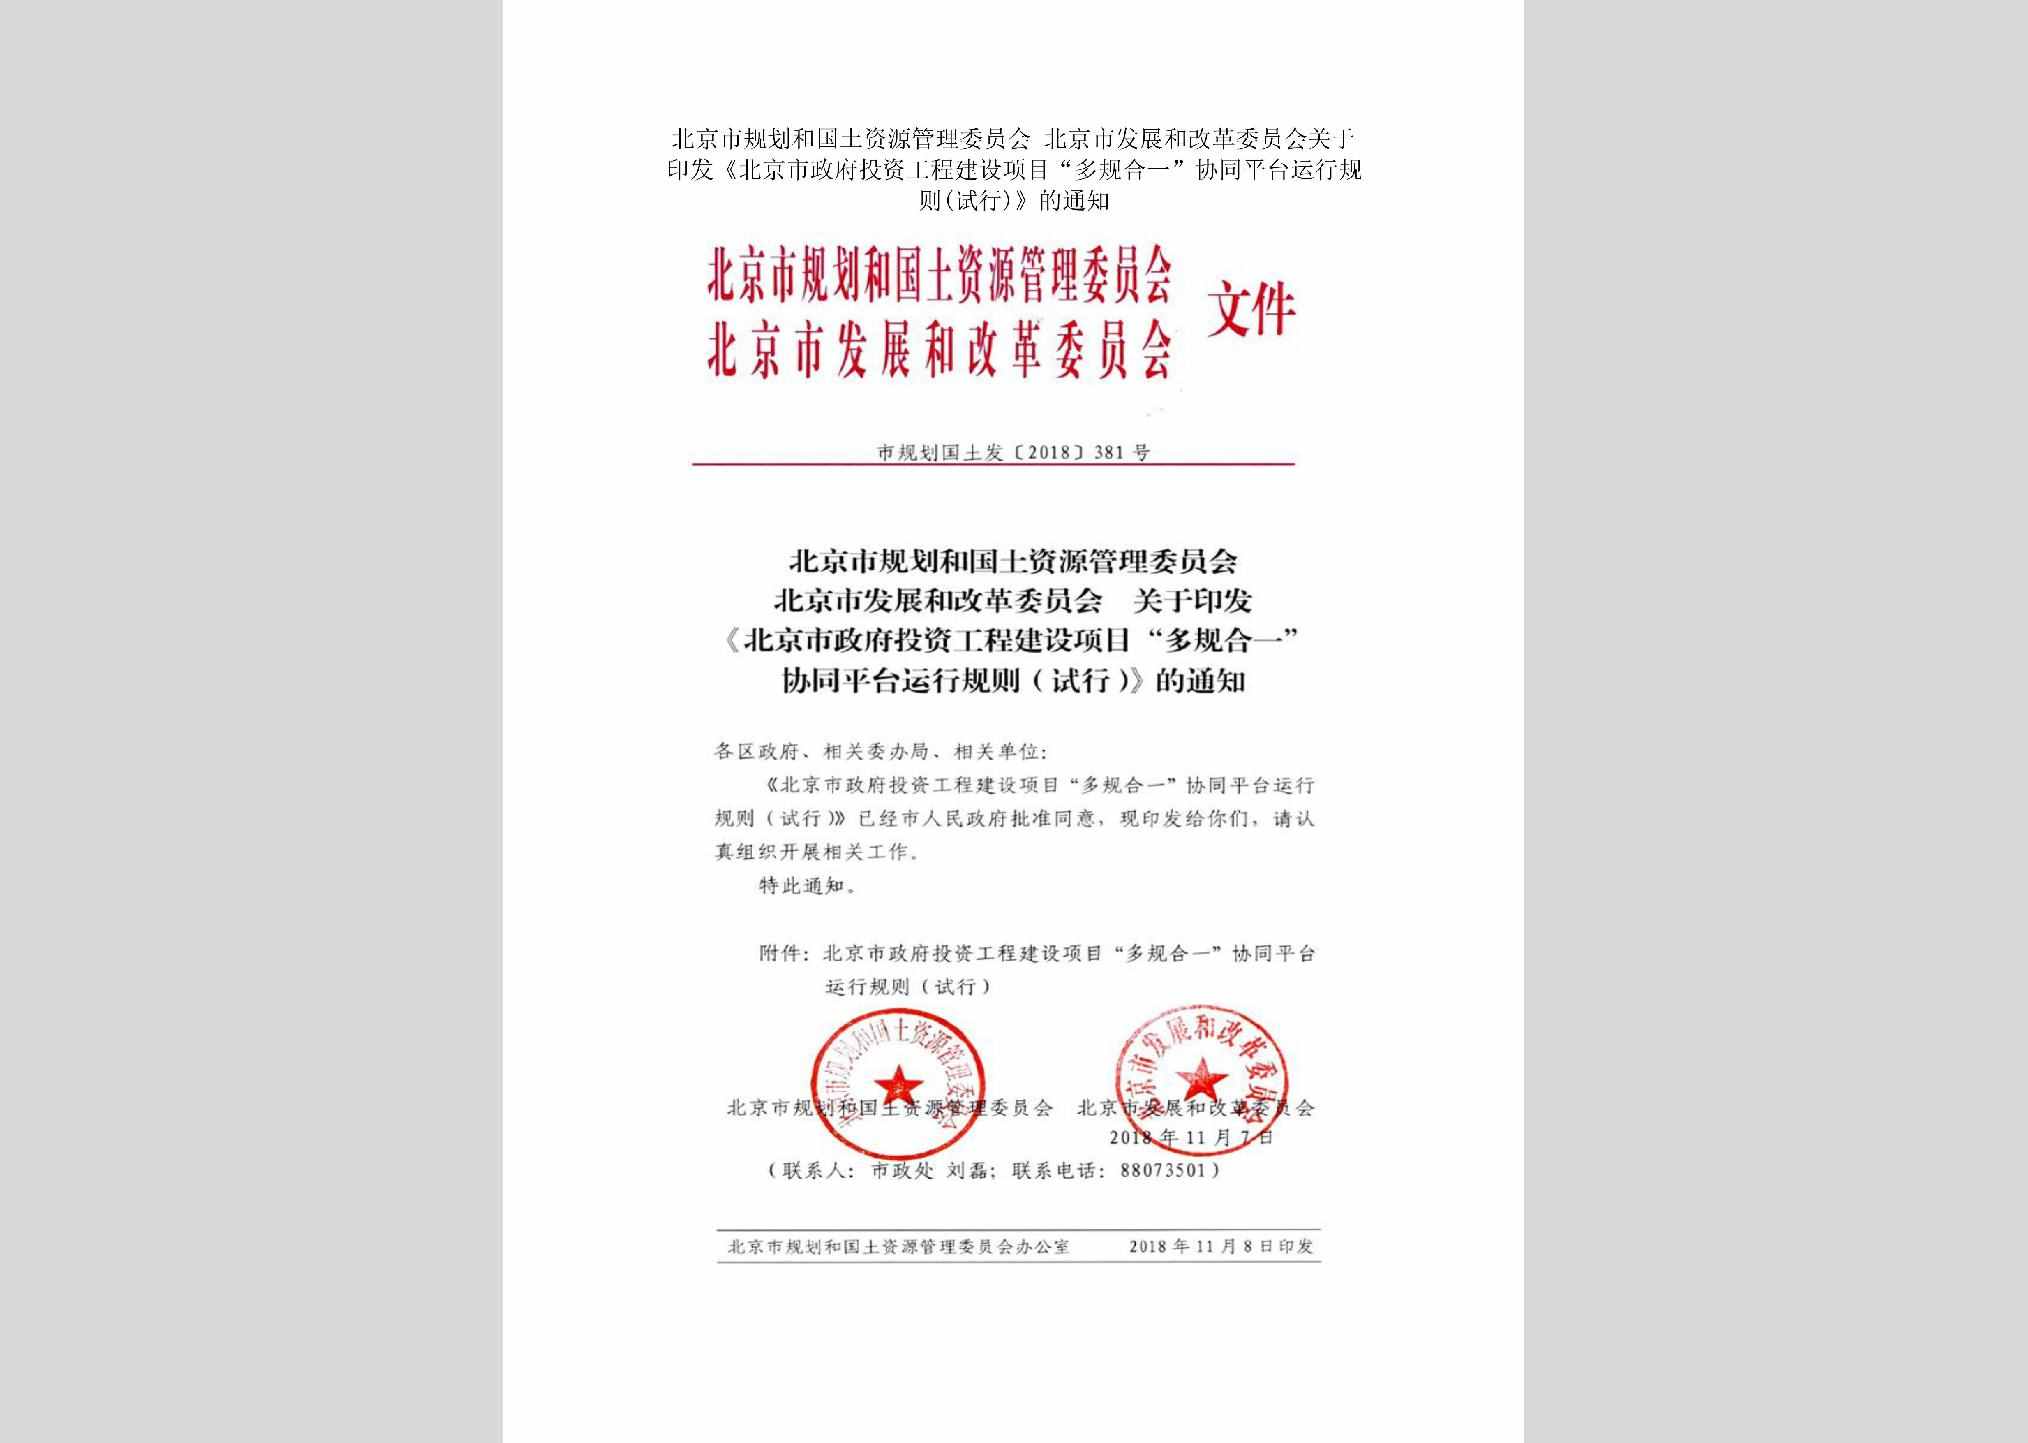 市规划国土发[2018]381号：北京市规划和国土资源管理委员会北京市发展和改革委员会关于印发《北京市政府投资工程建设项目“多规合一”协同平台运行规则(试行)》的通知